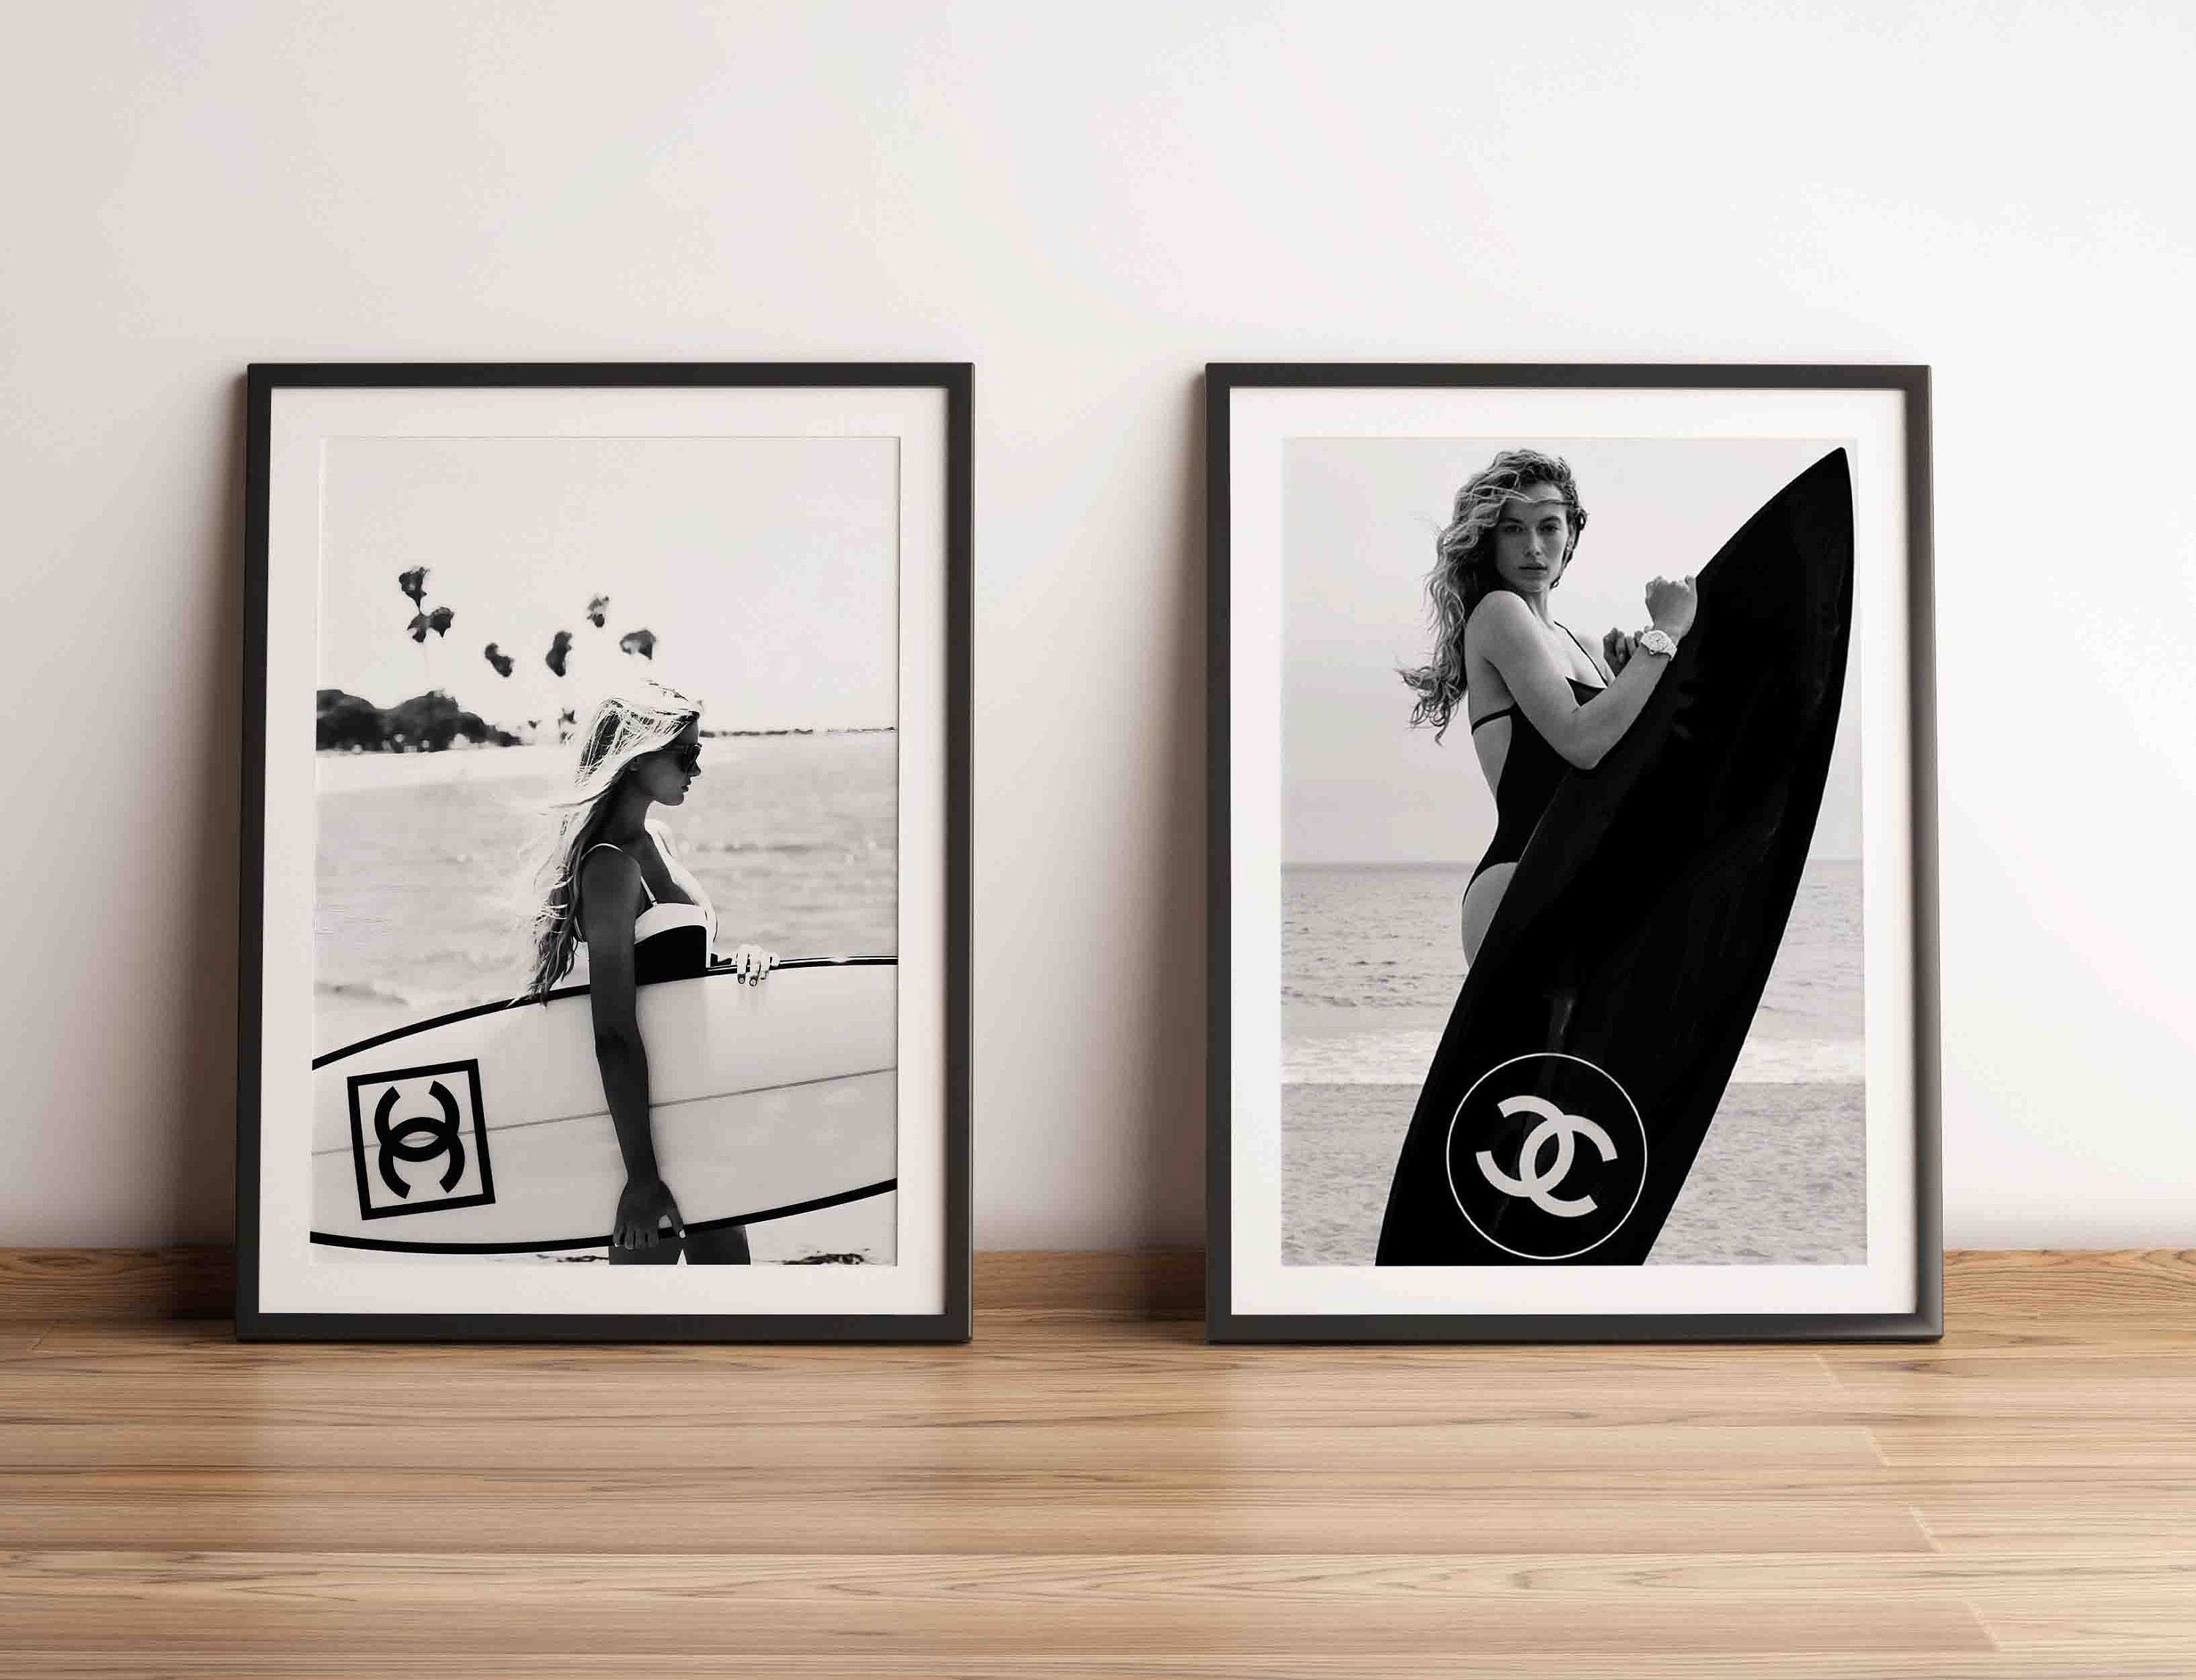 Surfboard Chanel Art 